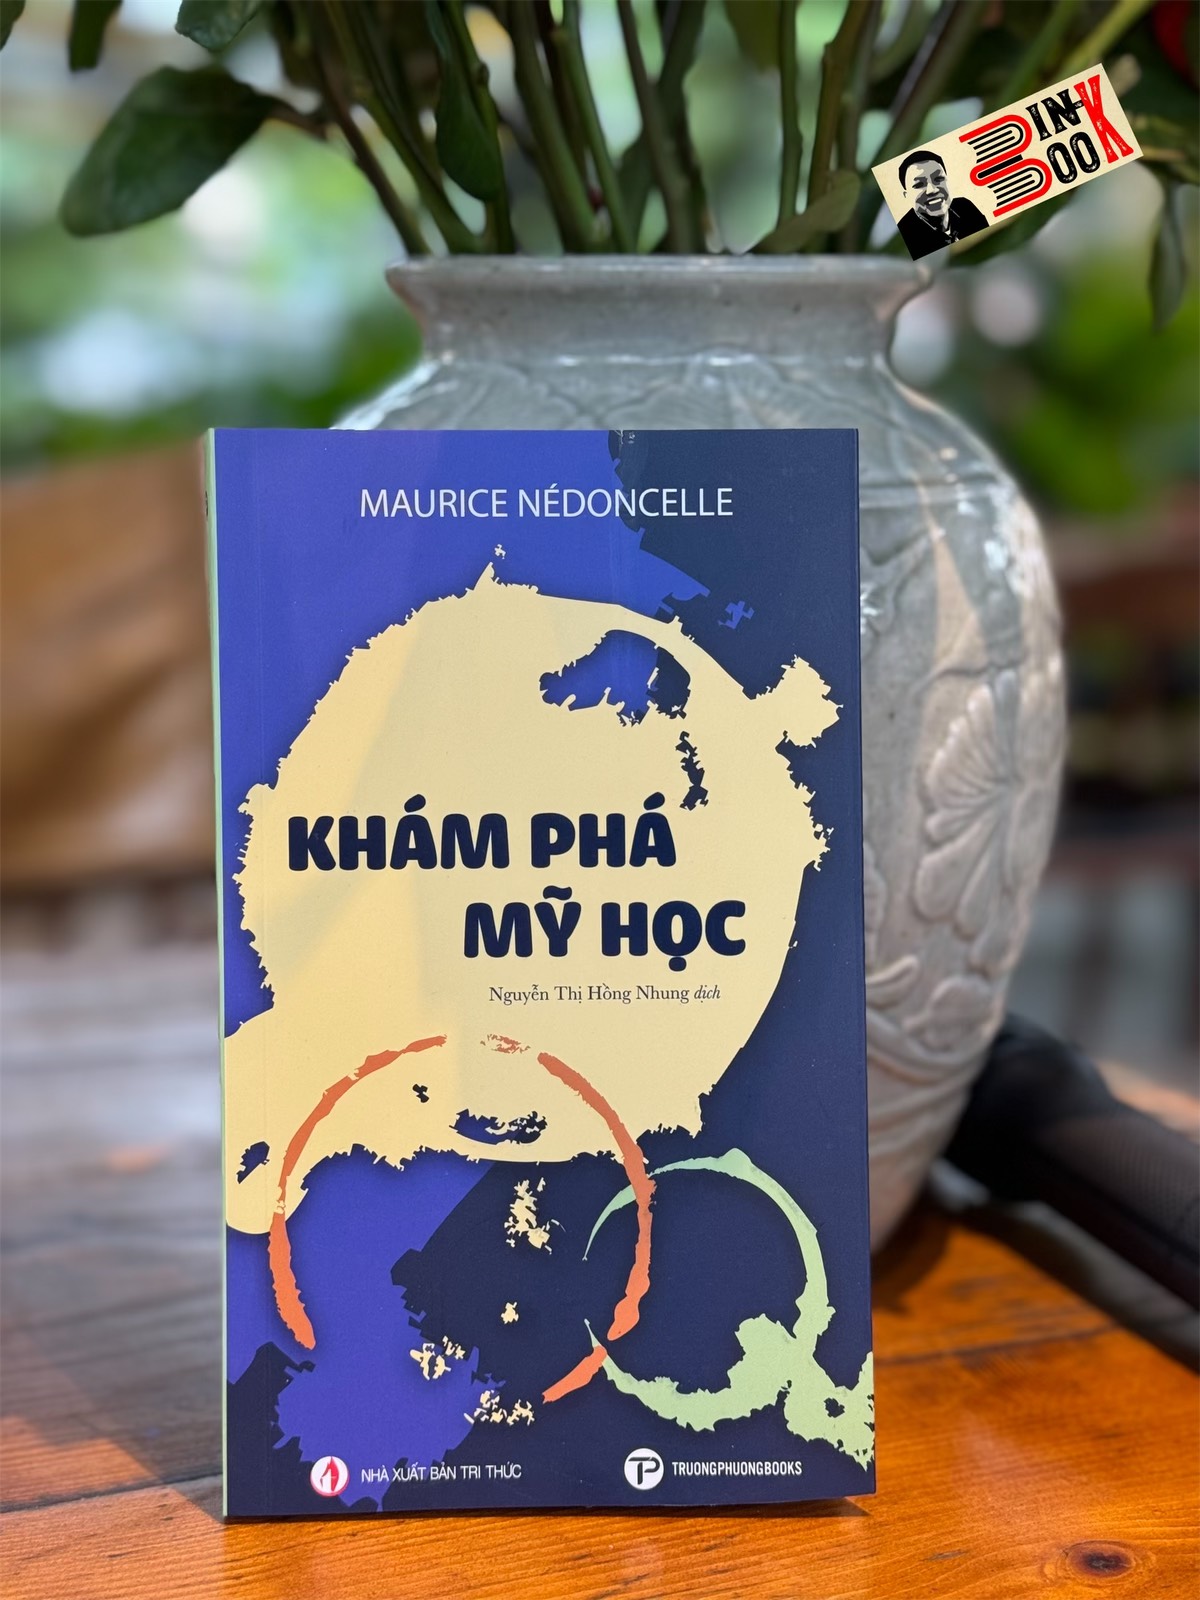 KHÁM PHÁ MỸ HỌC – Maurice Nédoncelle – Nguyễn Thị Hồng Nhung dịch - Trường Phương Books – NXB Tri Thức